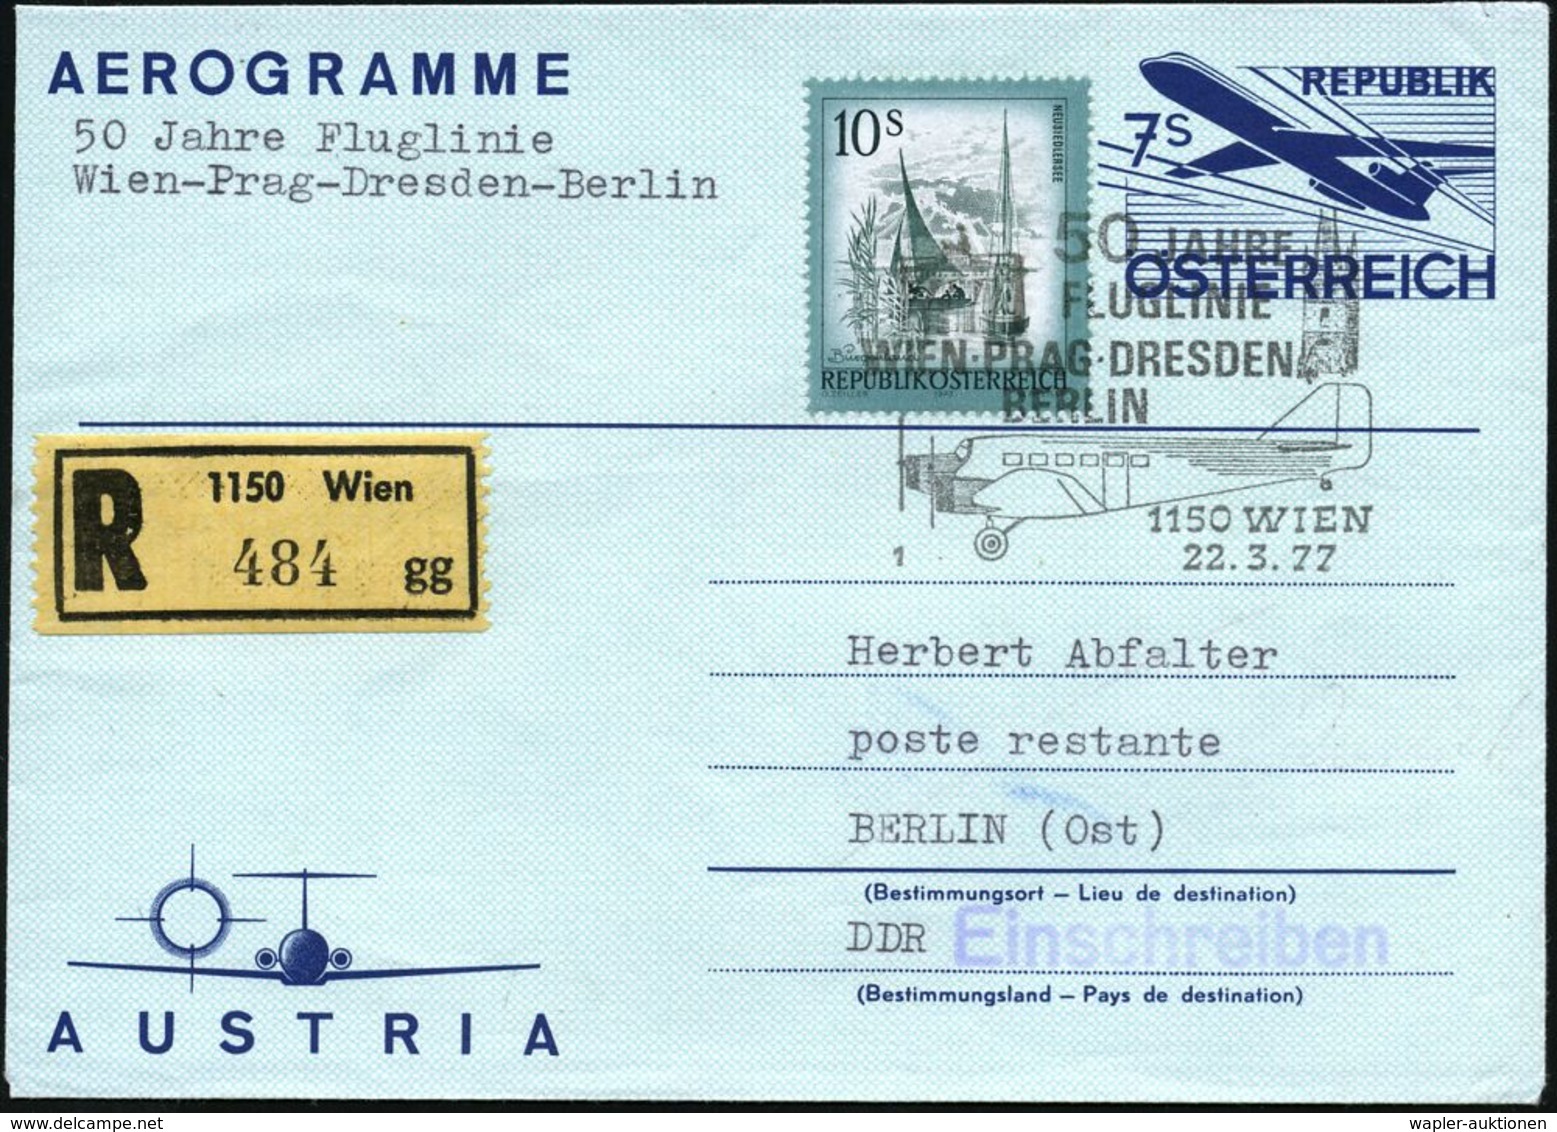 ÖSTERREICH 1977 (22.3.) 7 S. Aerogramm + 10 S. Dauerserie, SSt: 1150 WIEN/1/50 JAHRE/FLUGLINIE/WIEN-PRAG-DRESDEN/ BERLIN - Vliegtuigen